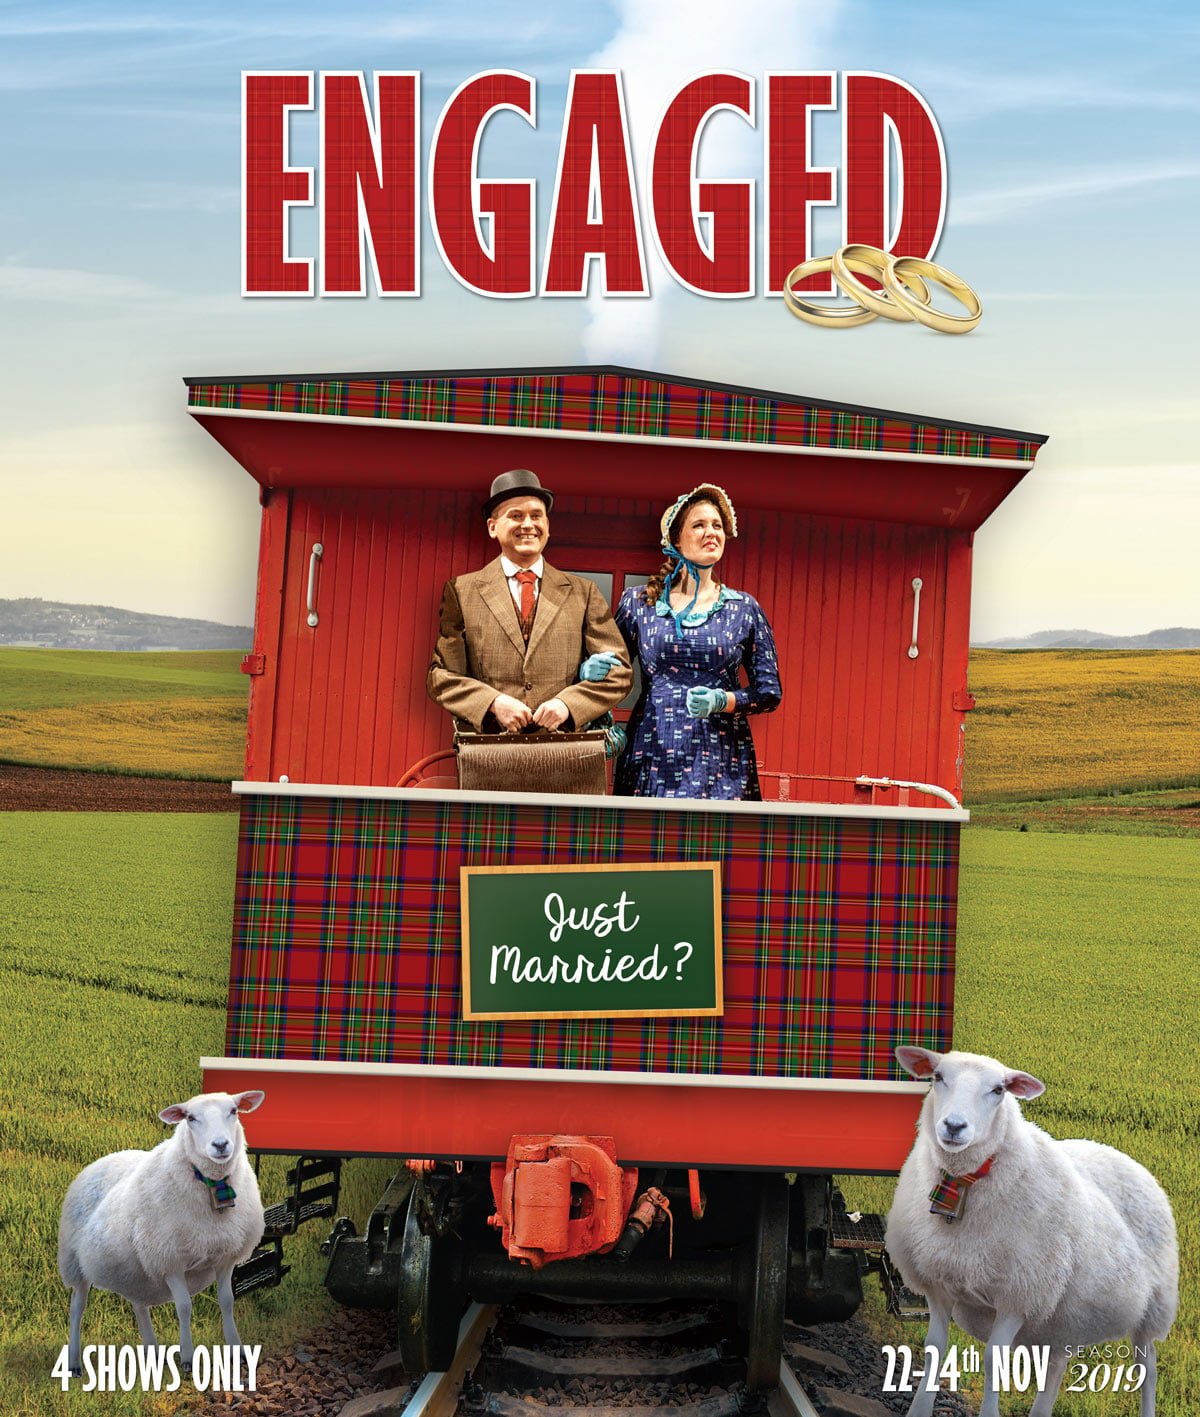 Engaged! Season 2019 - Gilbert & Sullivan Opera Victoria